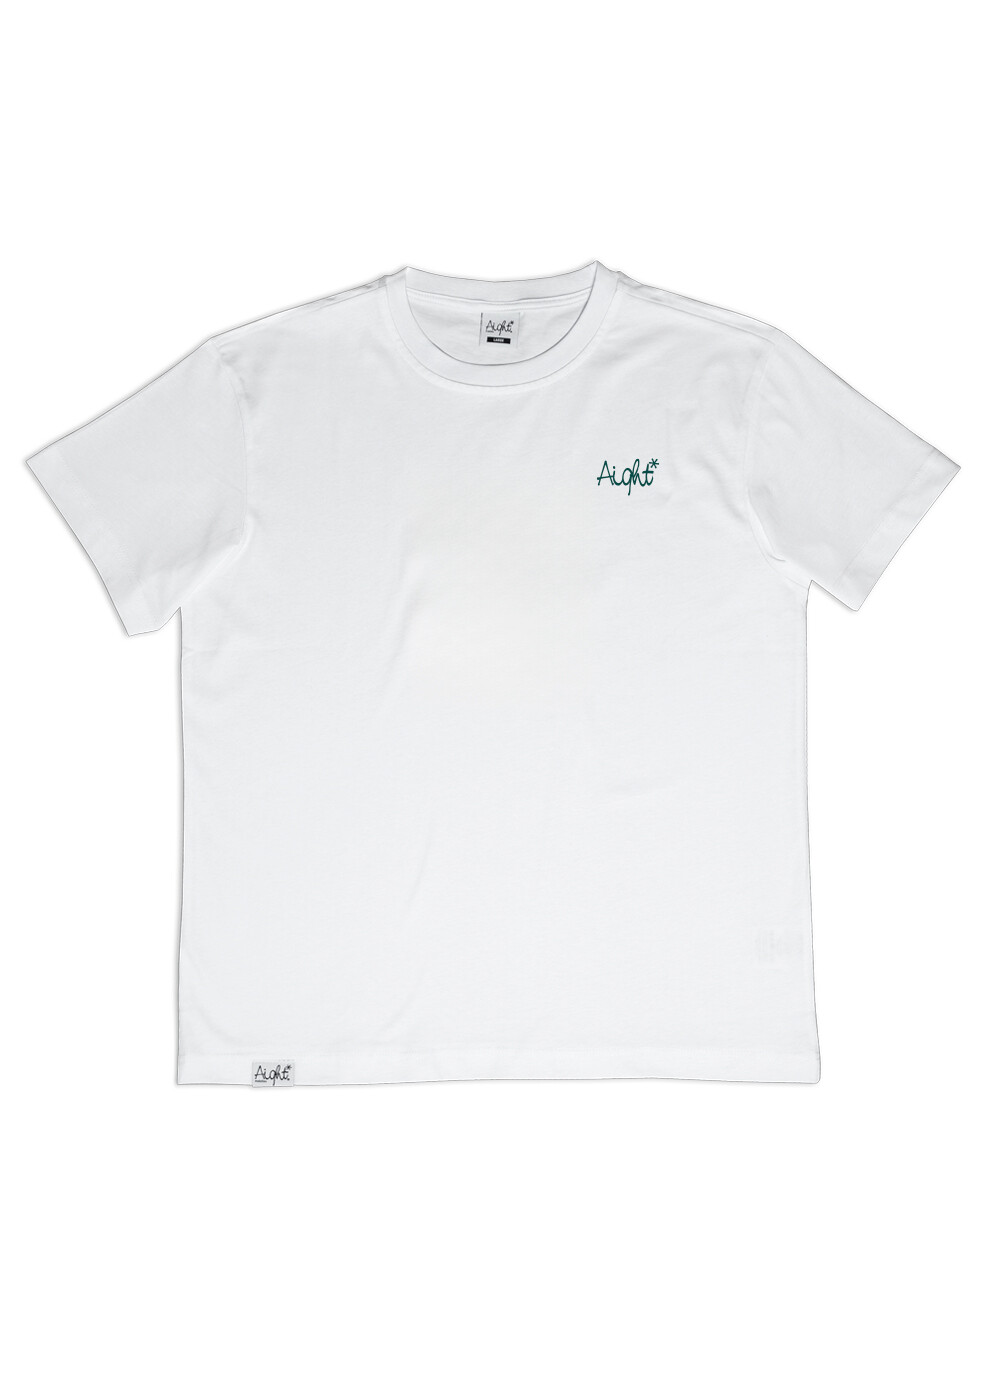 Aight* T-Shirt - "OG Emb" white forrest green